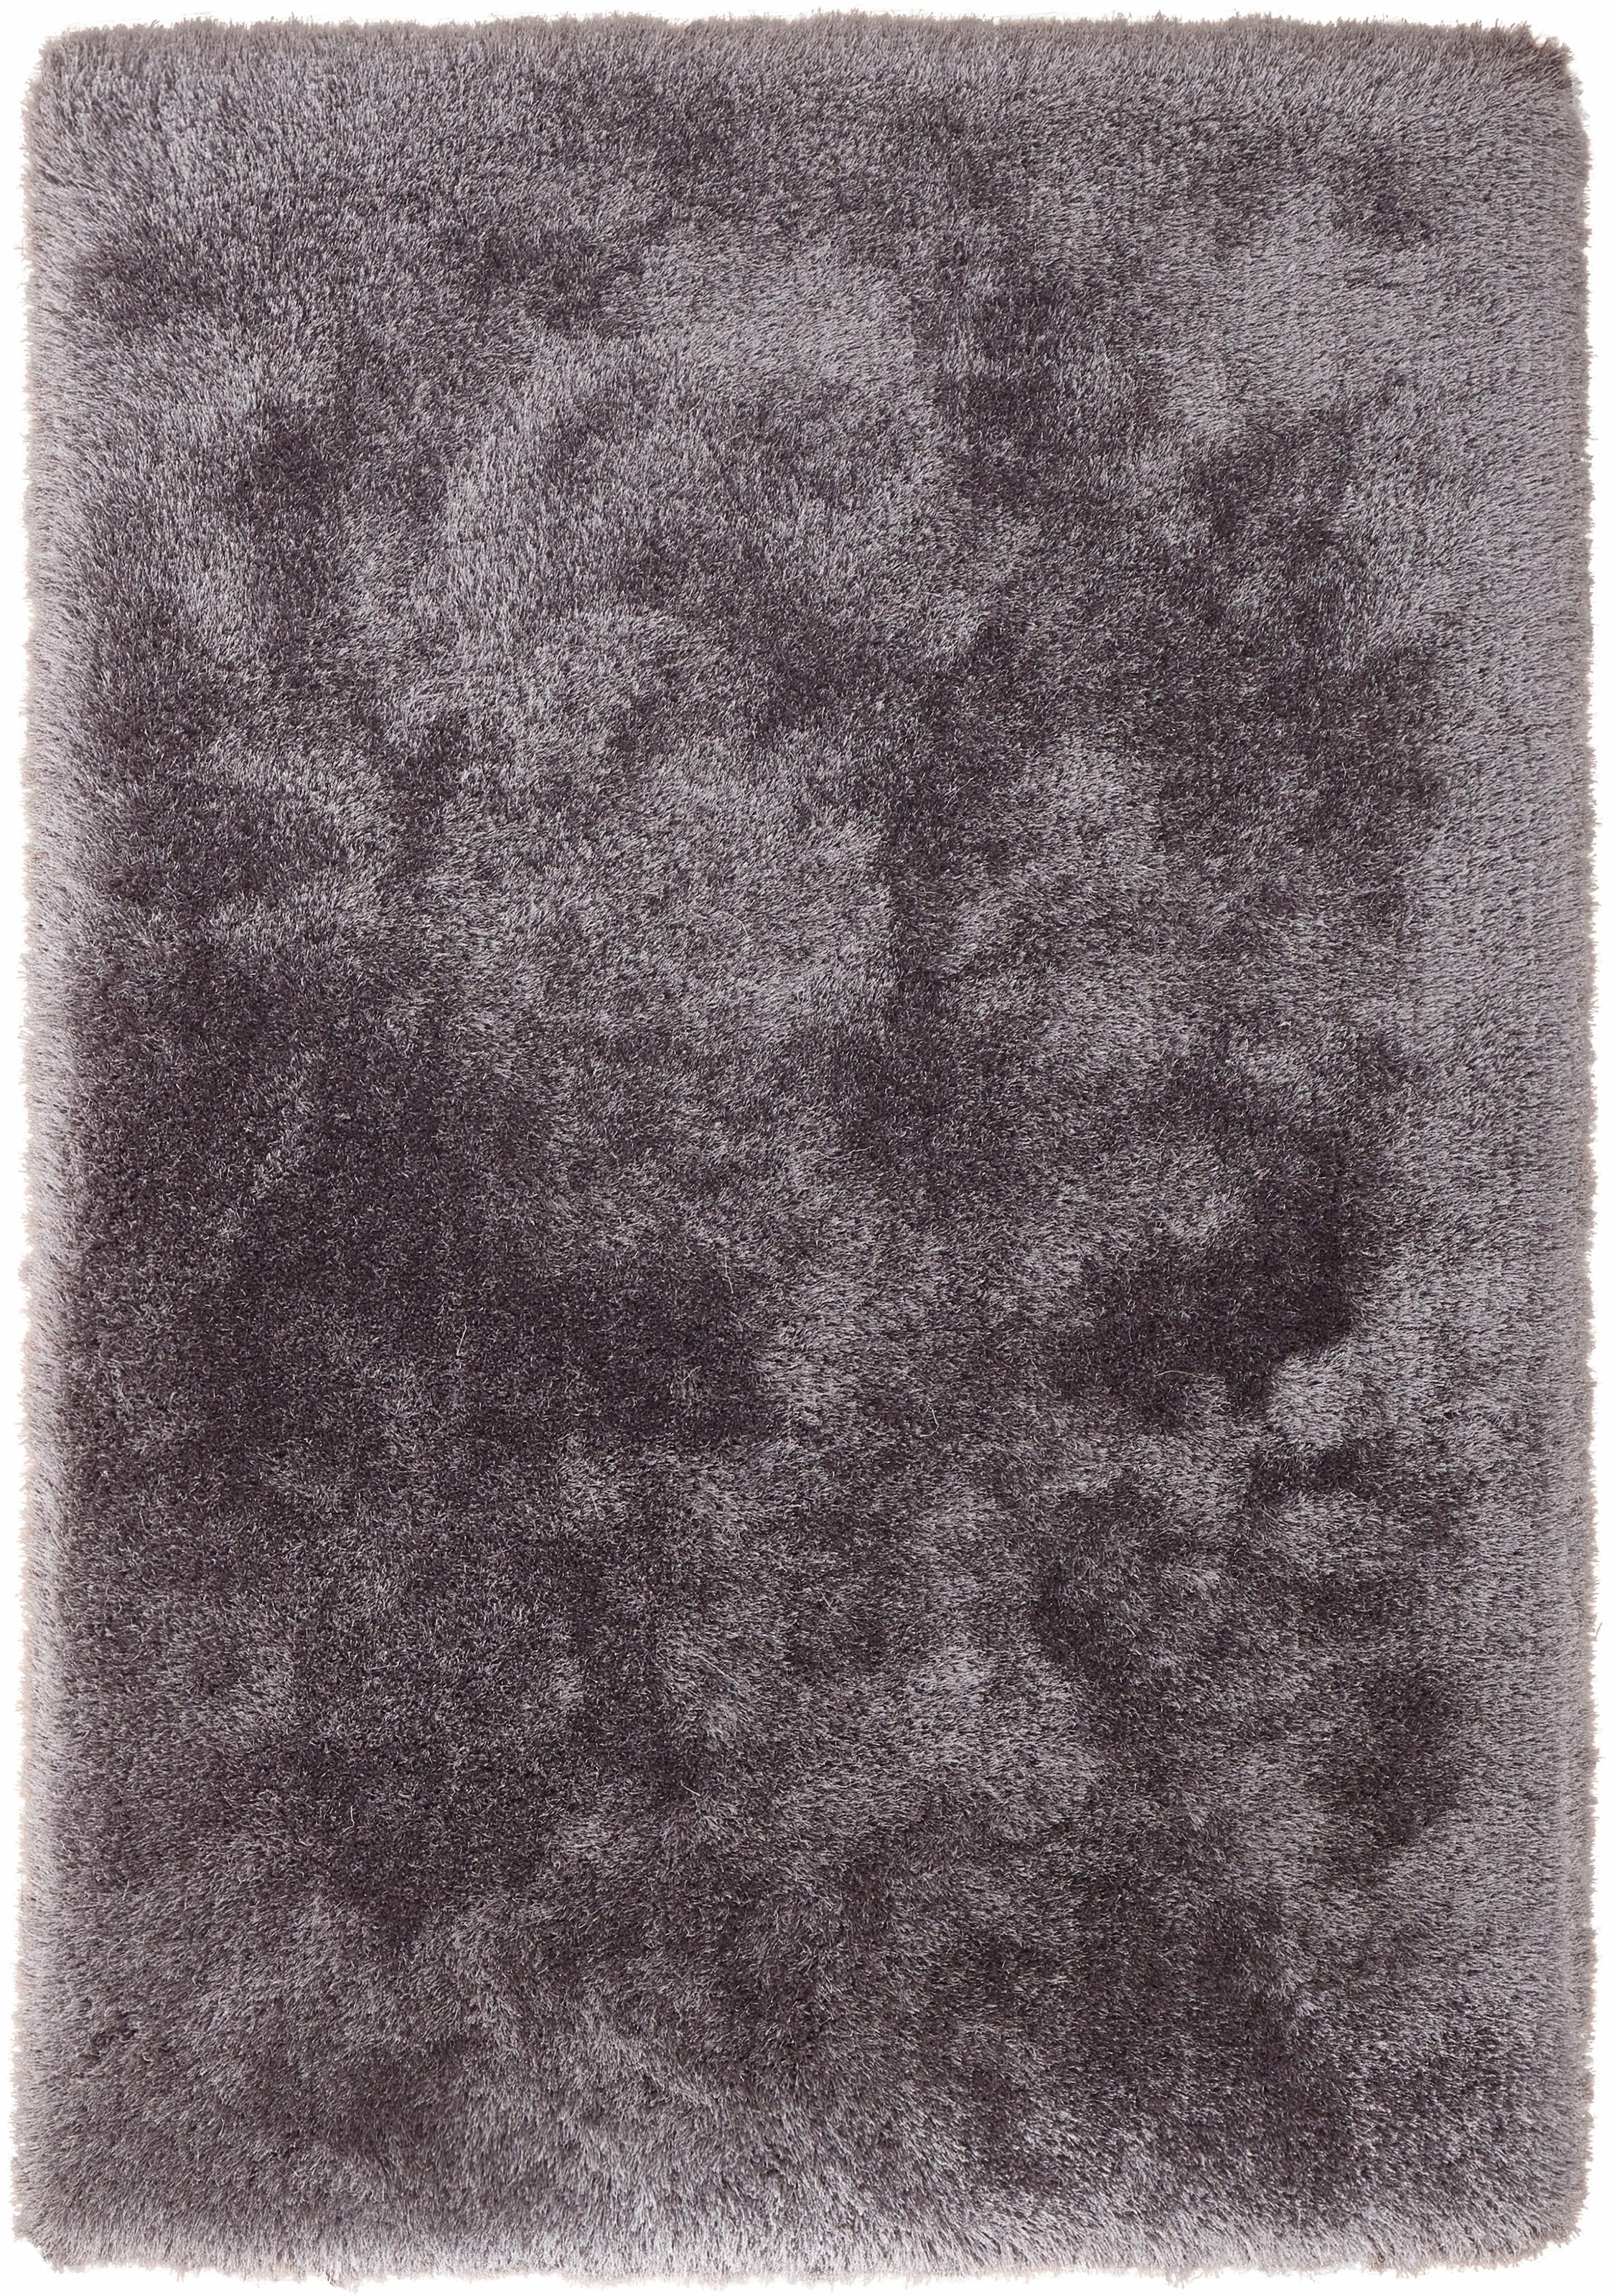 Kayoom Hochflor-Teppich »Cosy«, rechteckig, Besonders weich durch Microfaser, Wohnzimmer